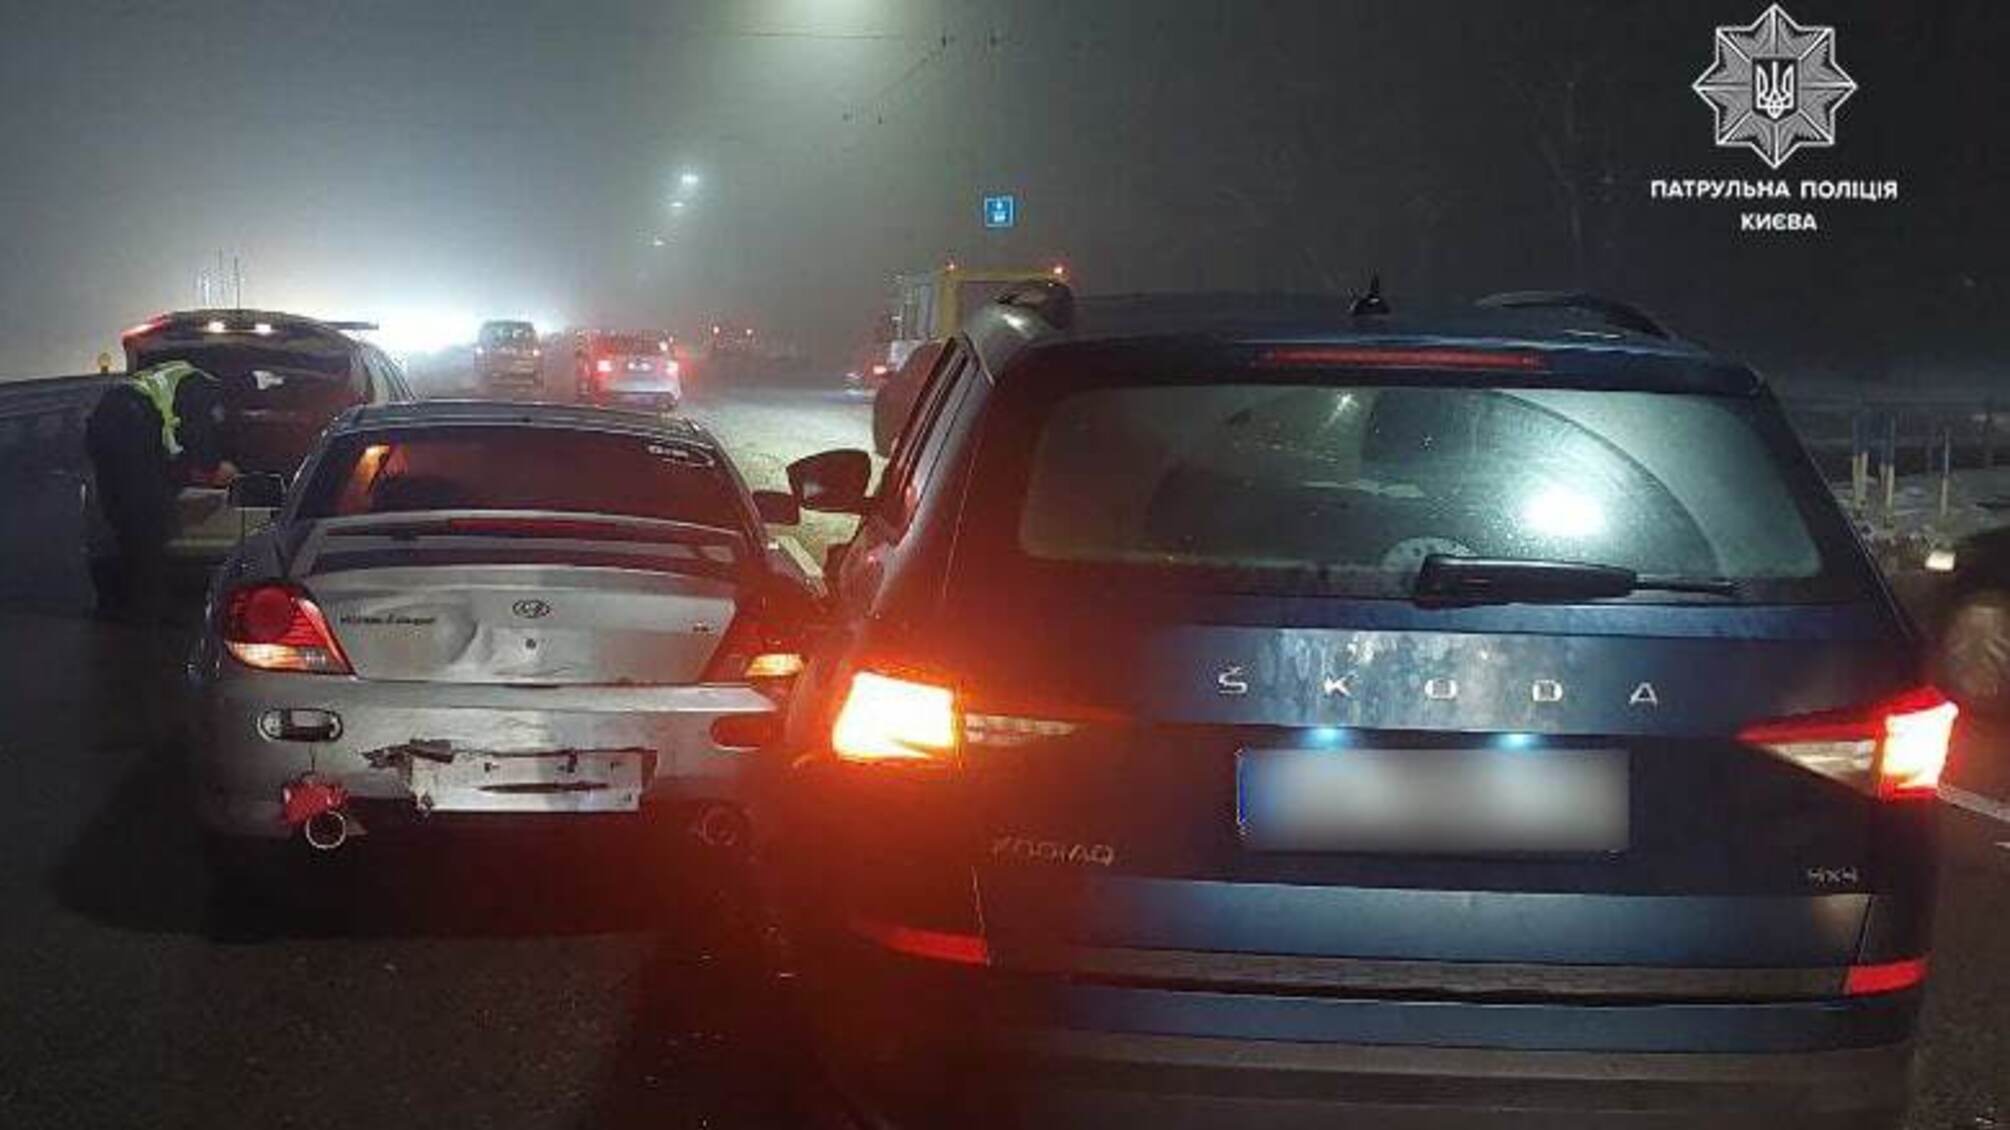 Пьяная водительница спровоцировала тройное ДТП в Киеве: подробности масштабной аварии